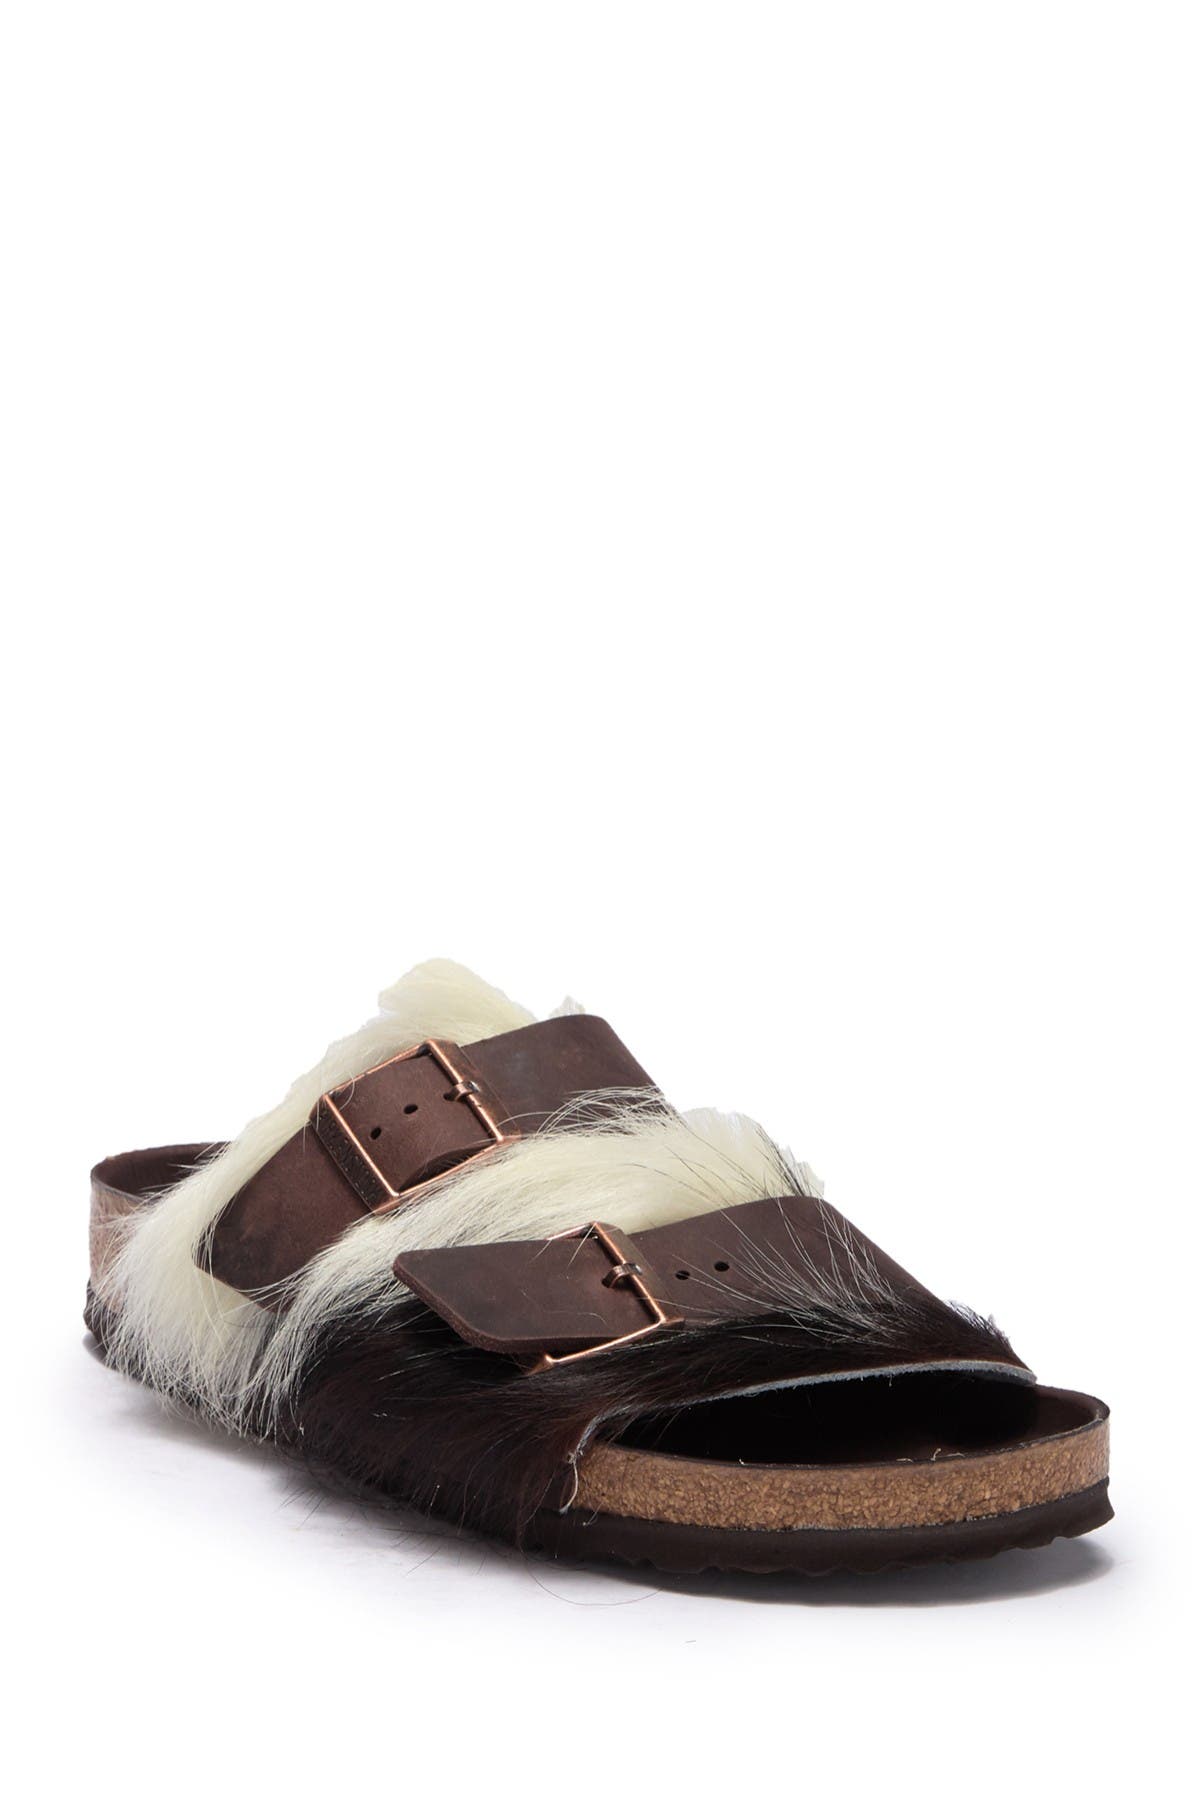 birkenstock fur sandals